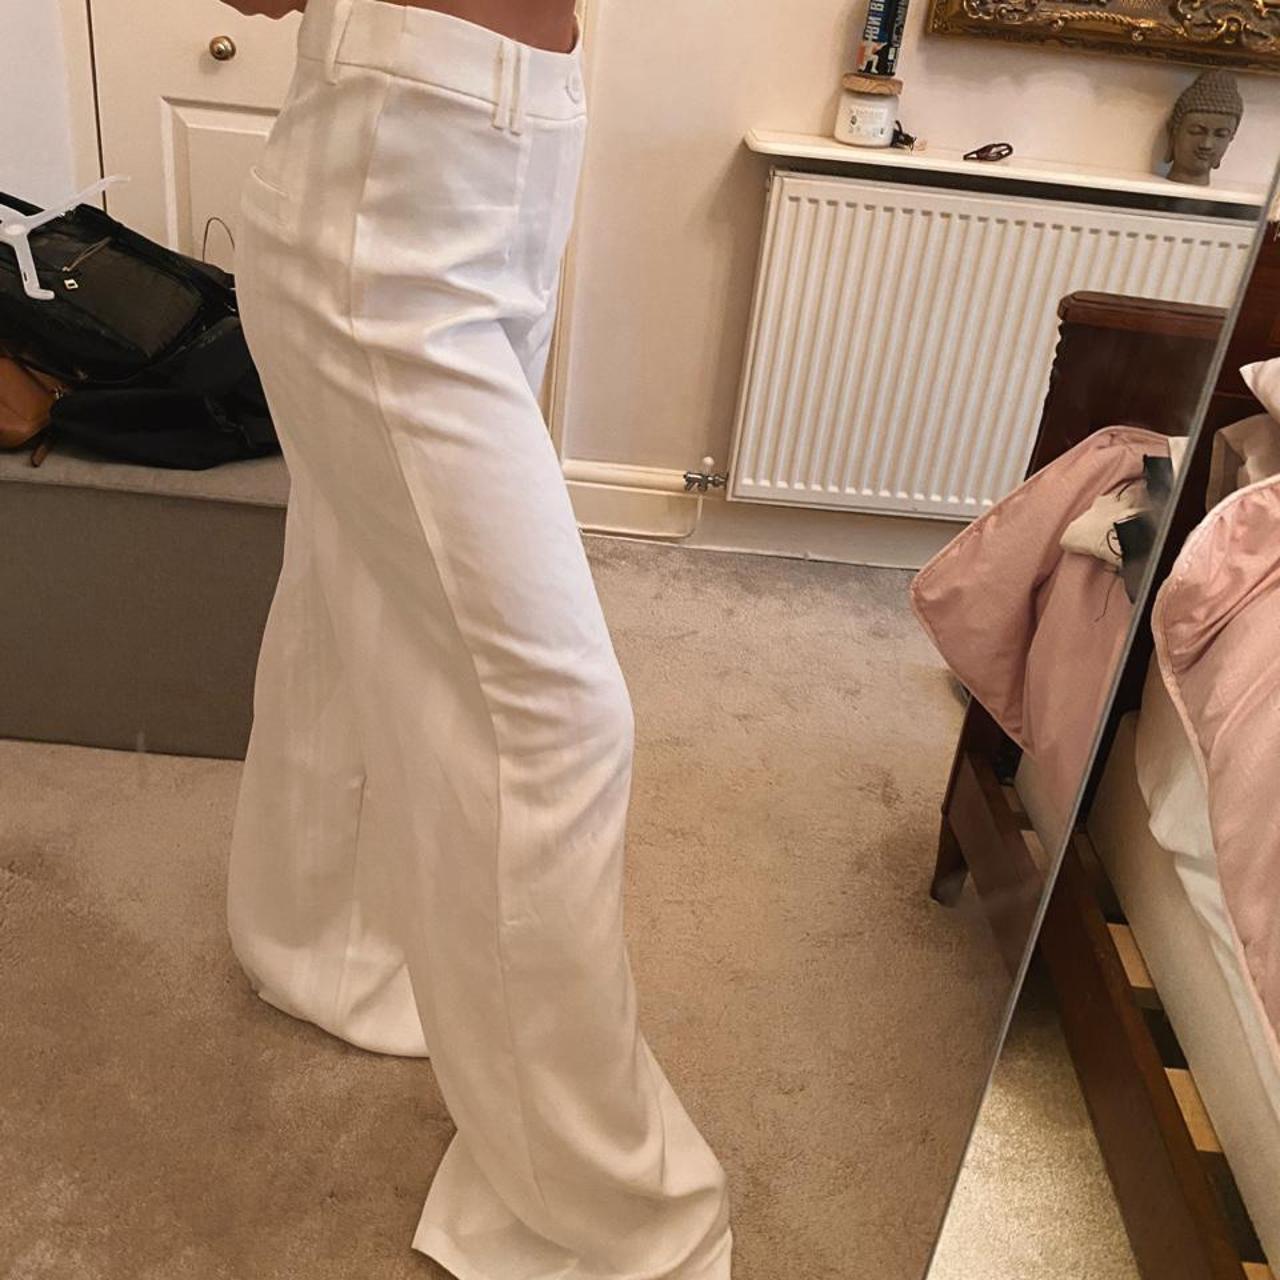 White Woven Double Belt Loop Suit Pants